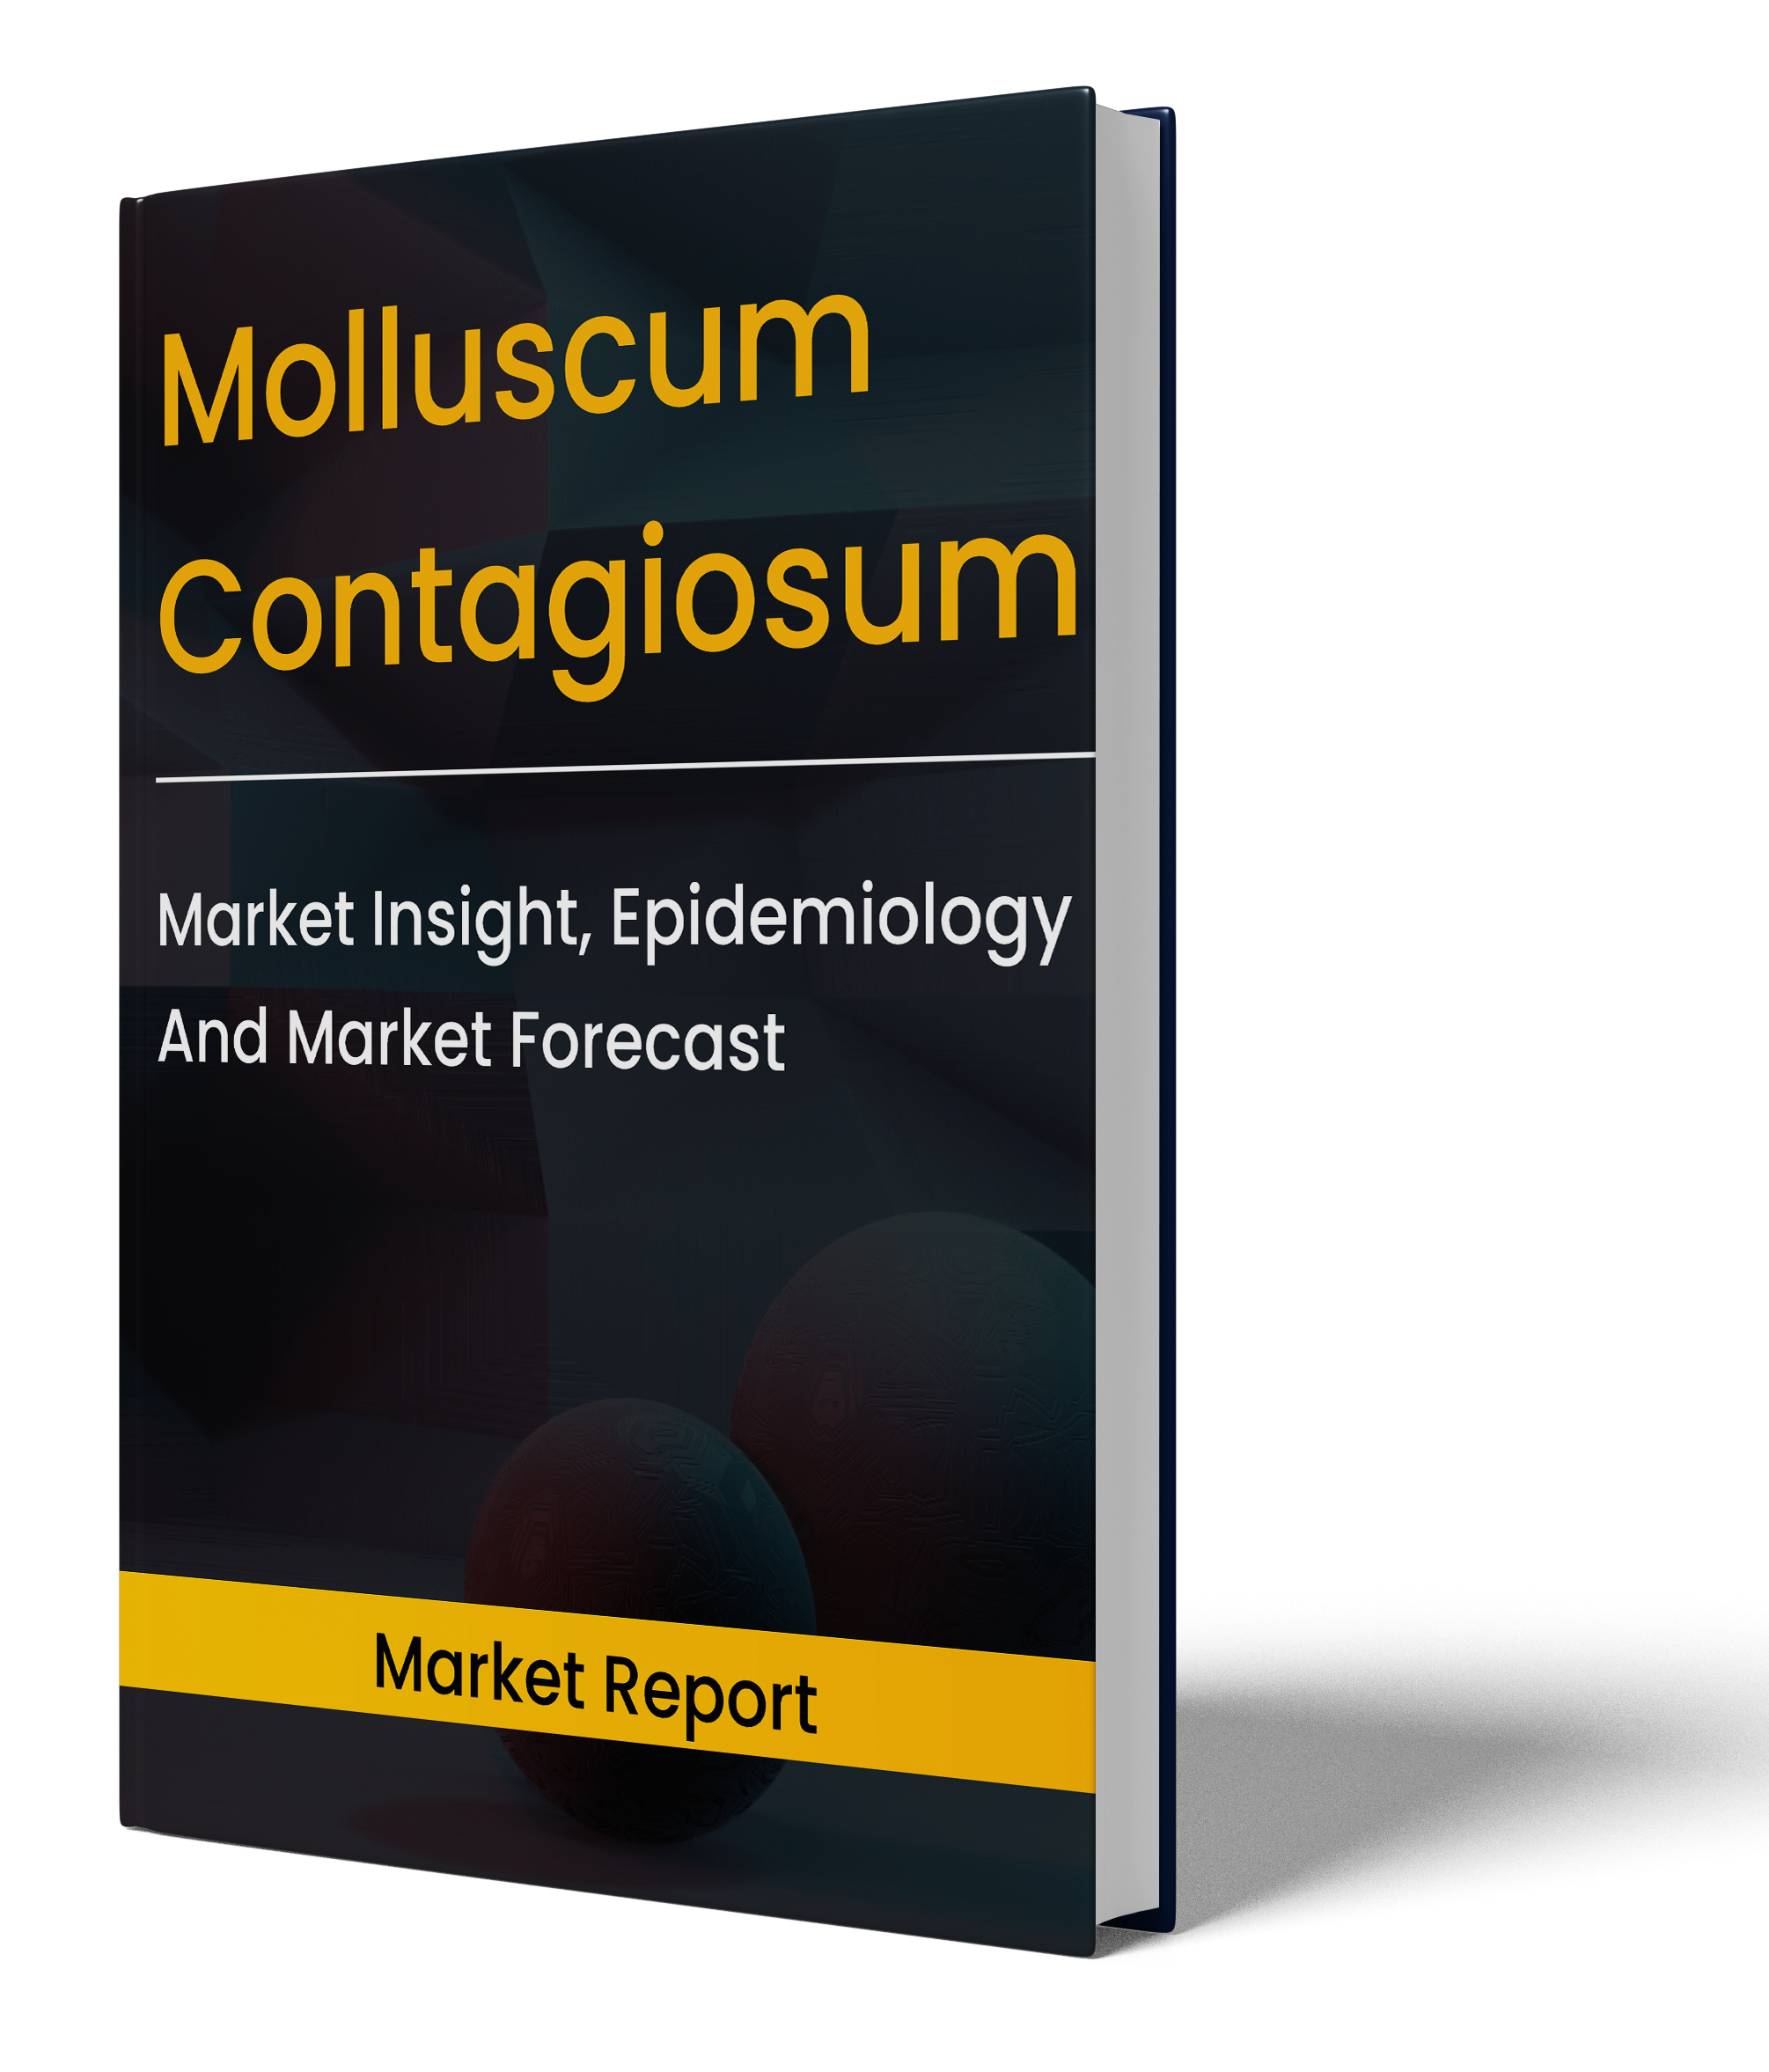 molluscum contagiosum market insight report